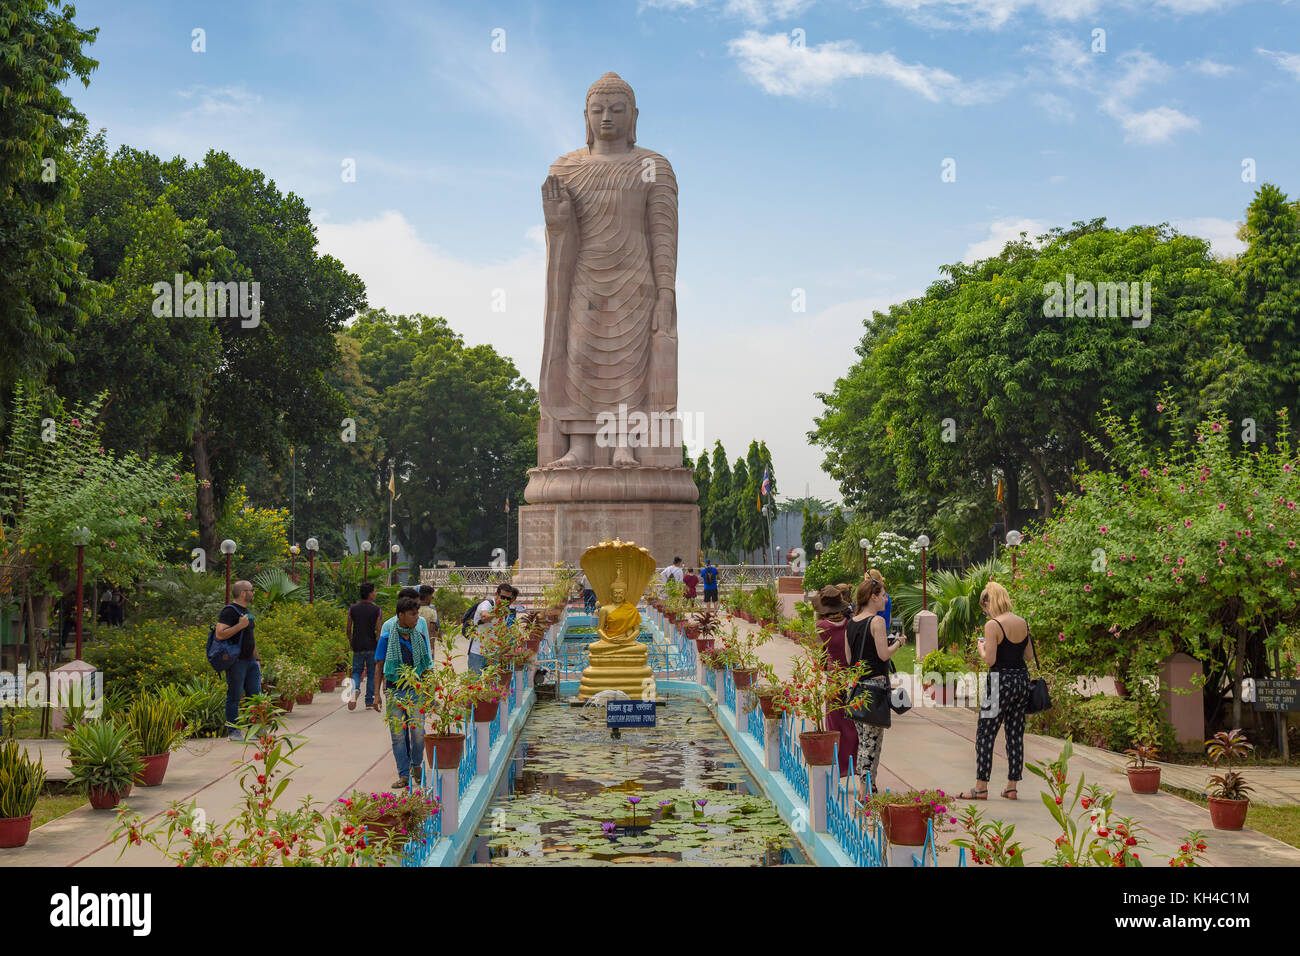 Gigantic sculpture of standing Buddha 80 feet tall at Wat Thai monastery Sarnath, Varanasi, India. Stock Photo